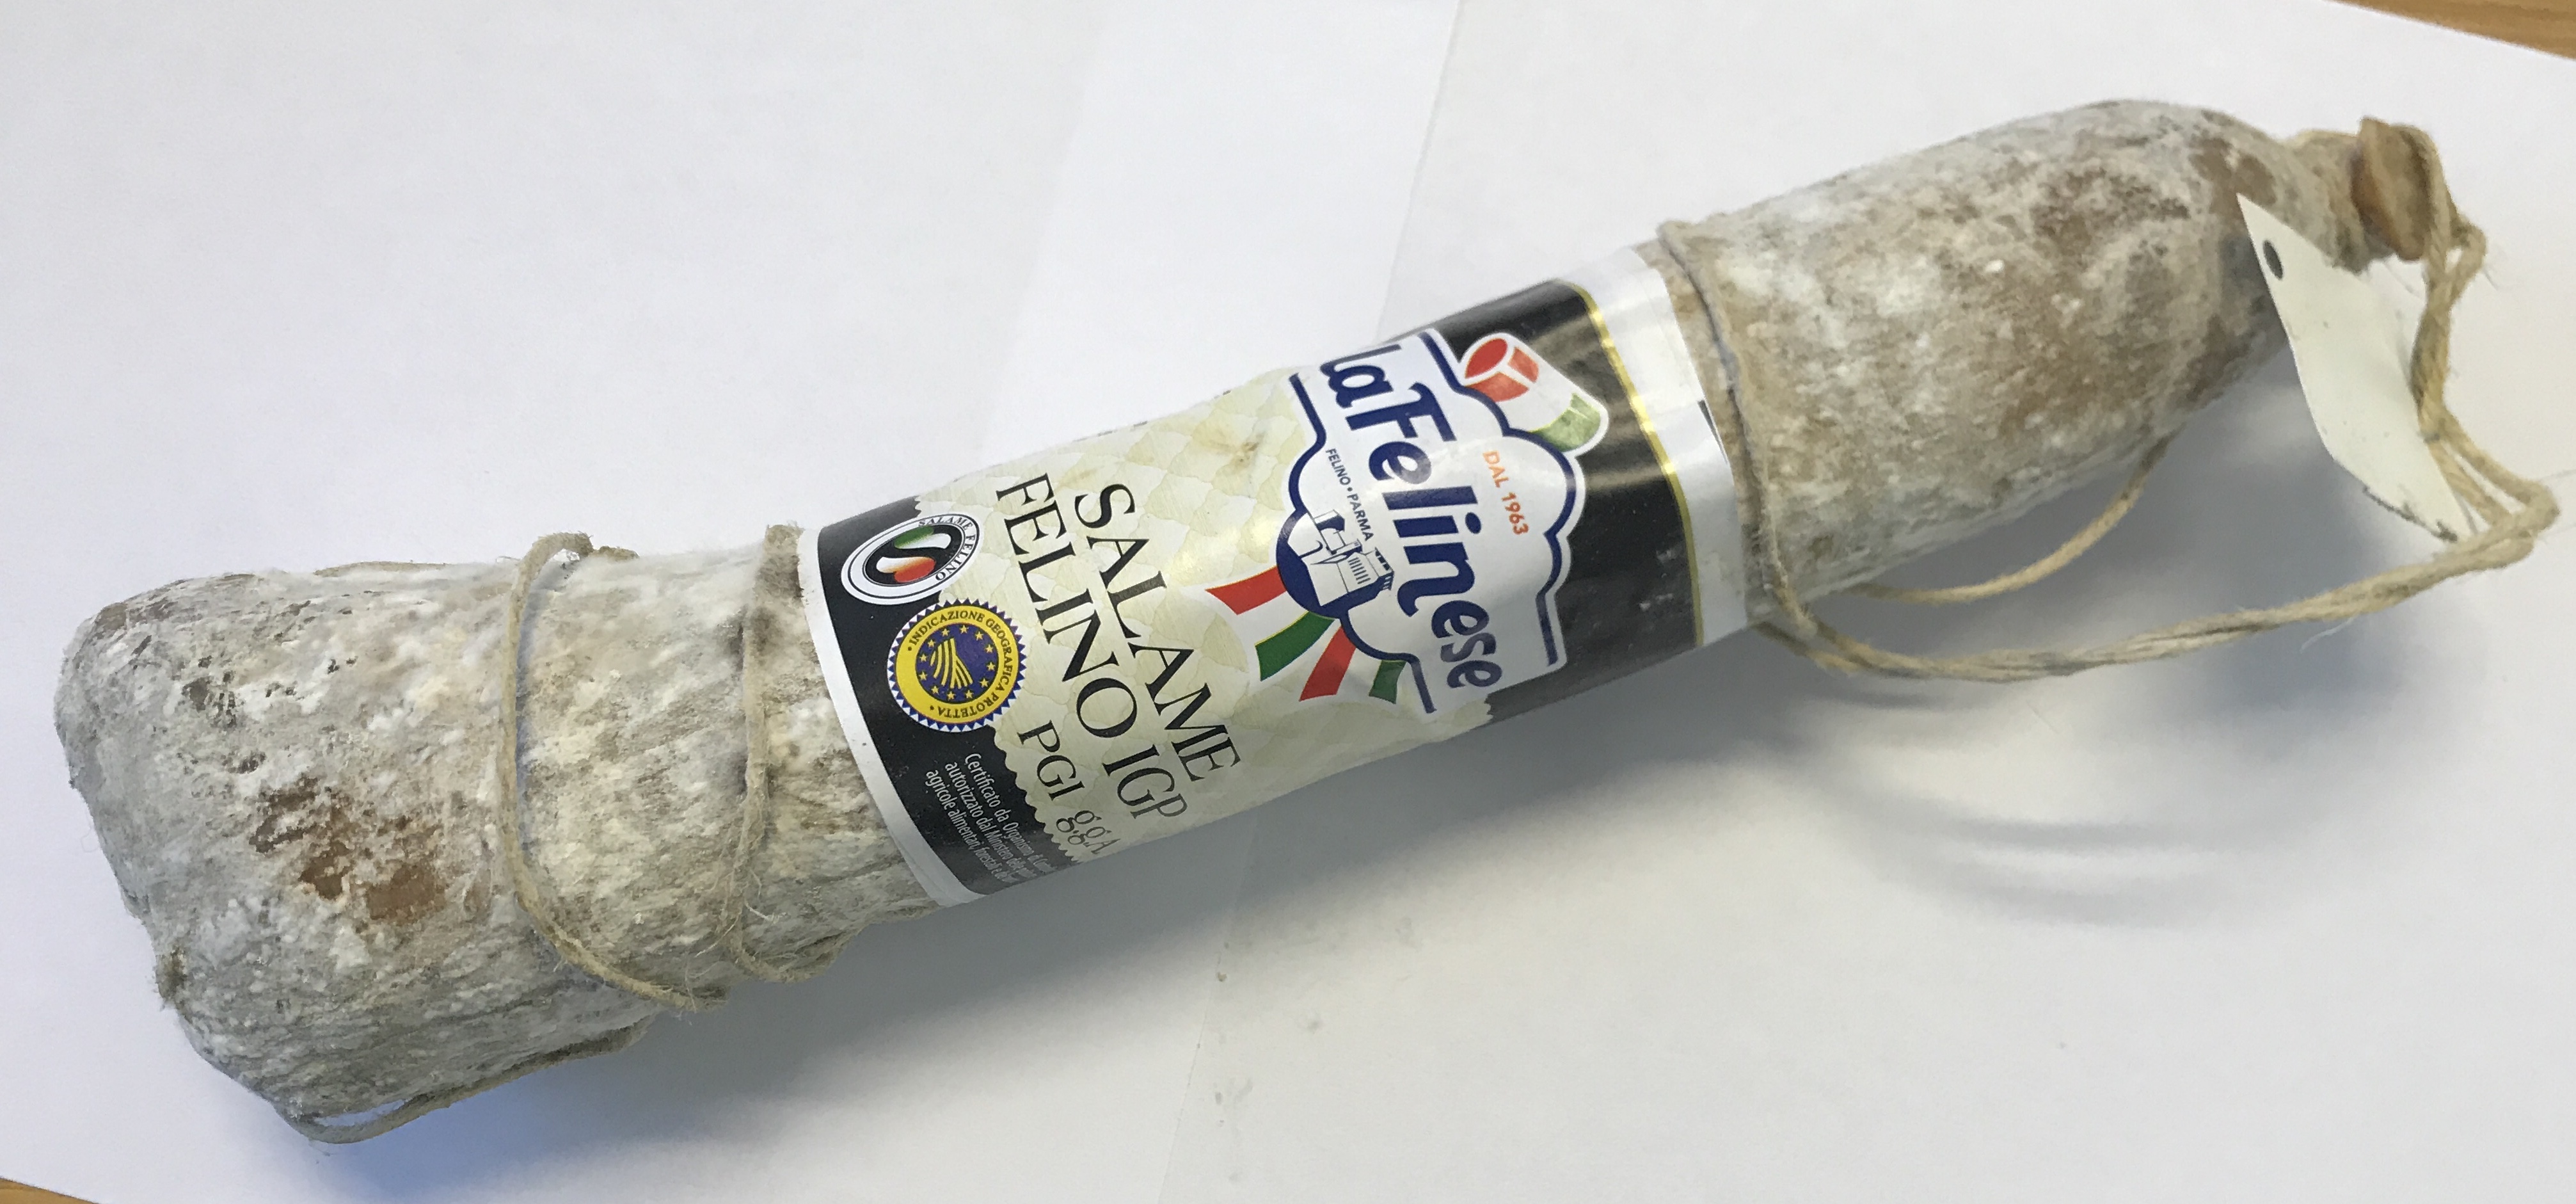 Salame Felino IGP aus Parmaschinken 1/2 Salami eingeschweißt